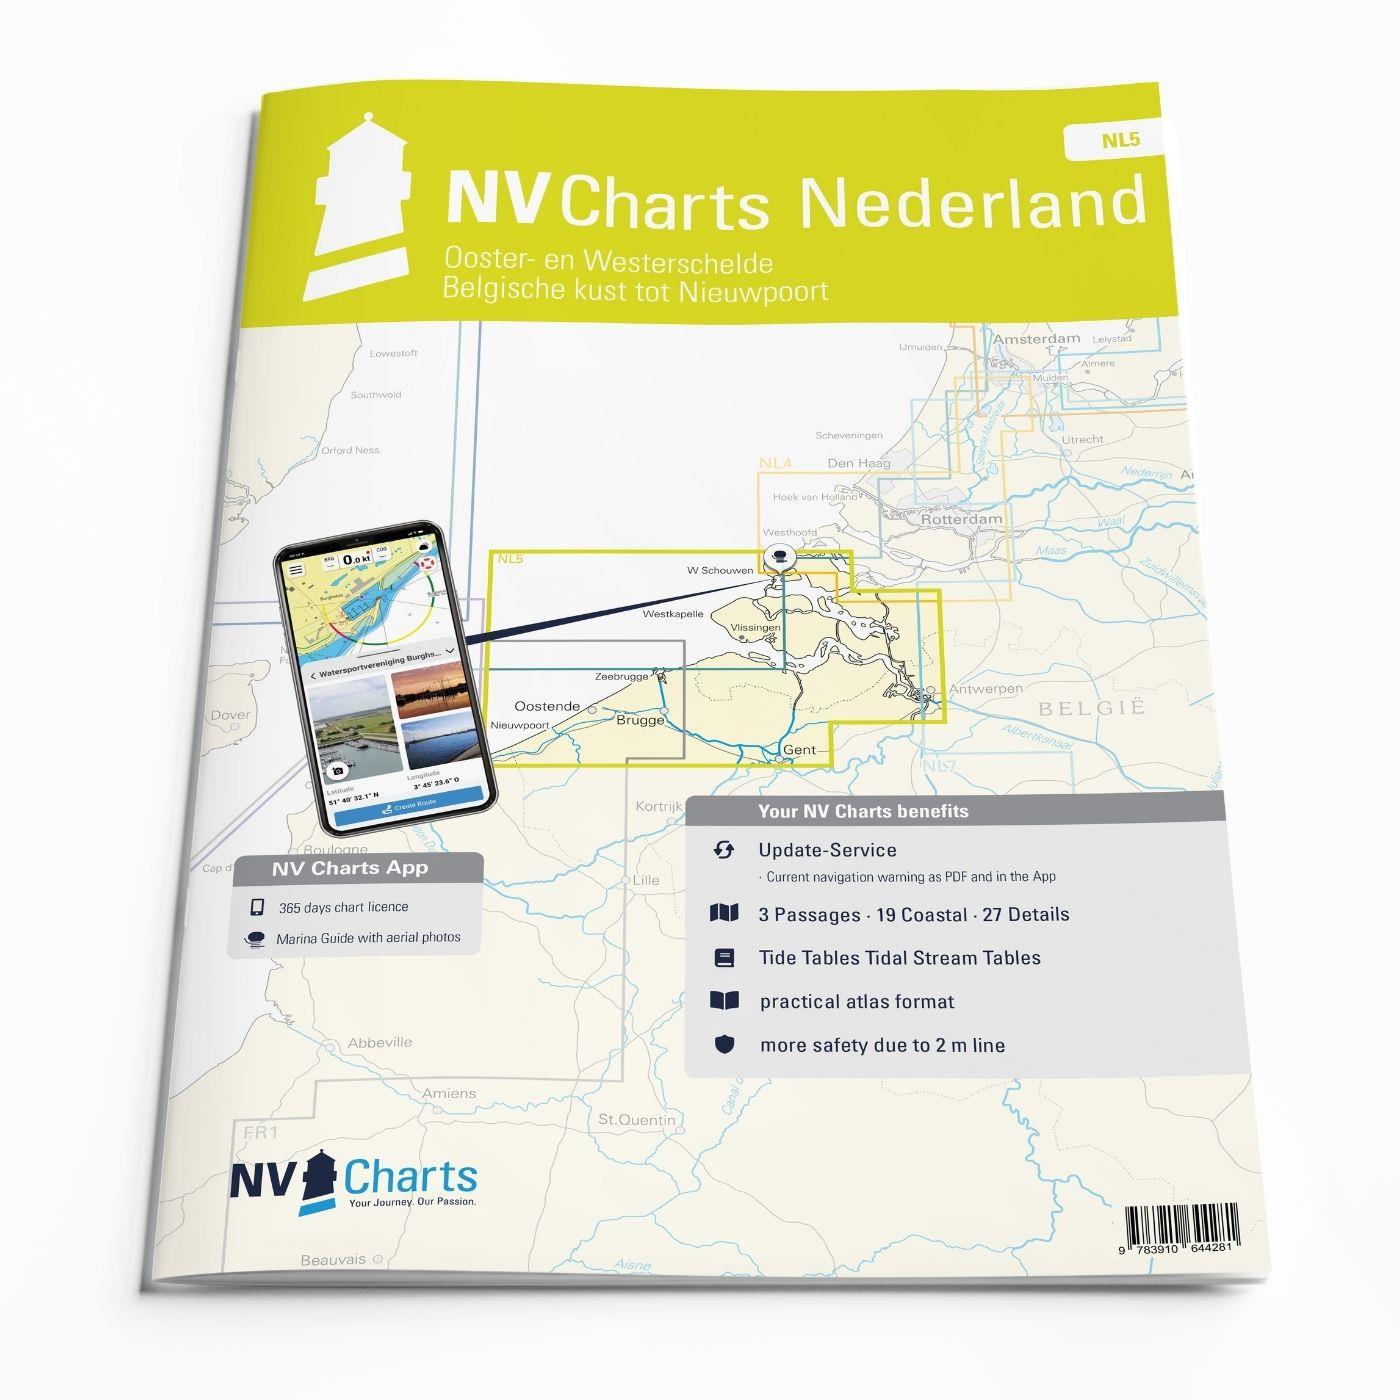 ABO - NV Charts Nederland NL5 - Ooster & Westerschelde